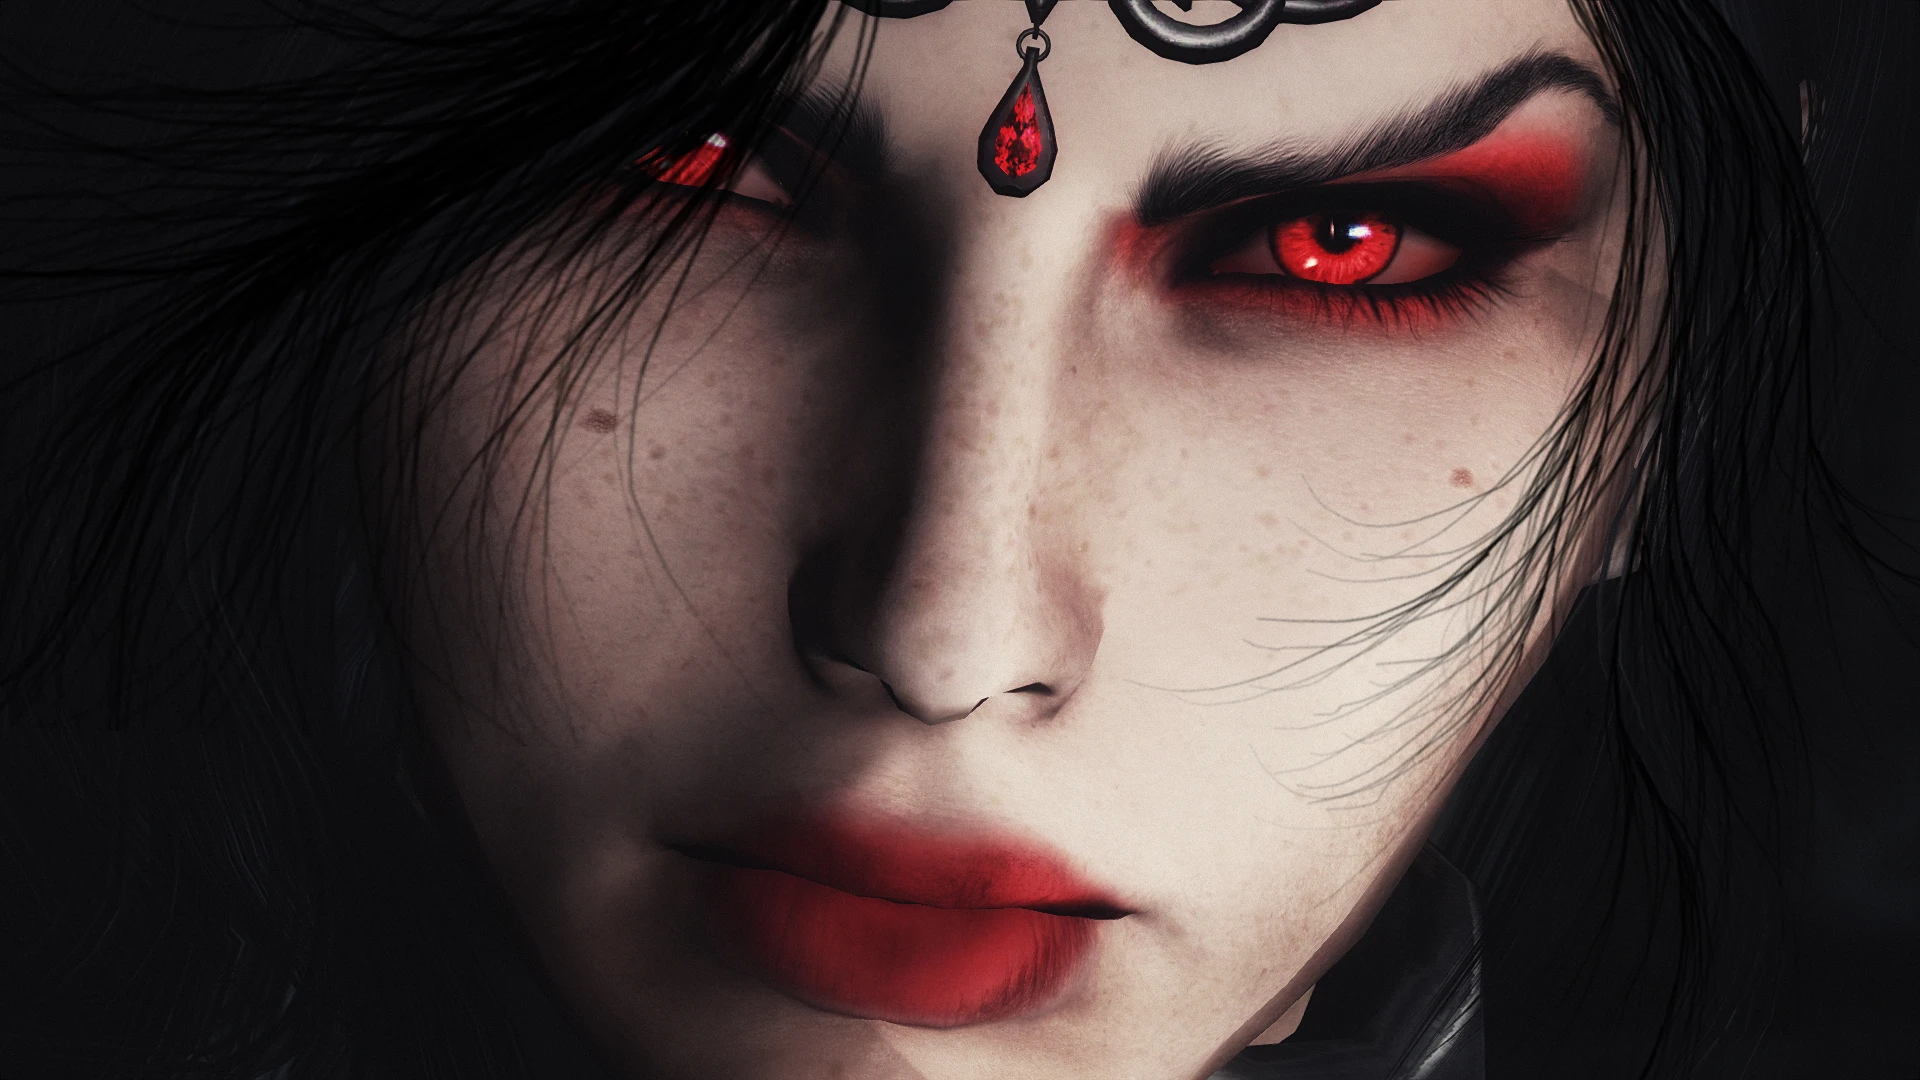 Gallery of Red Vampire Eyes Skyrim.